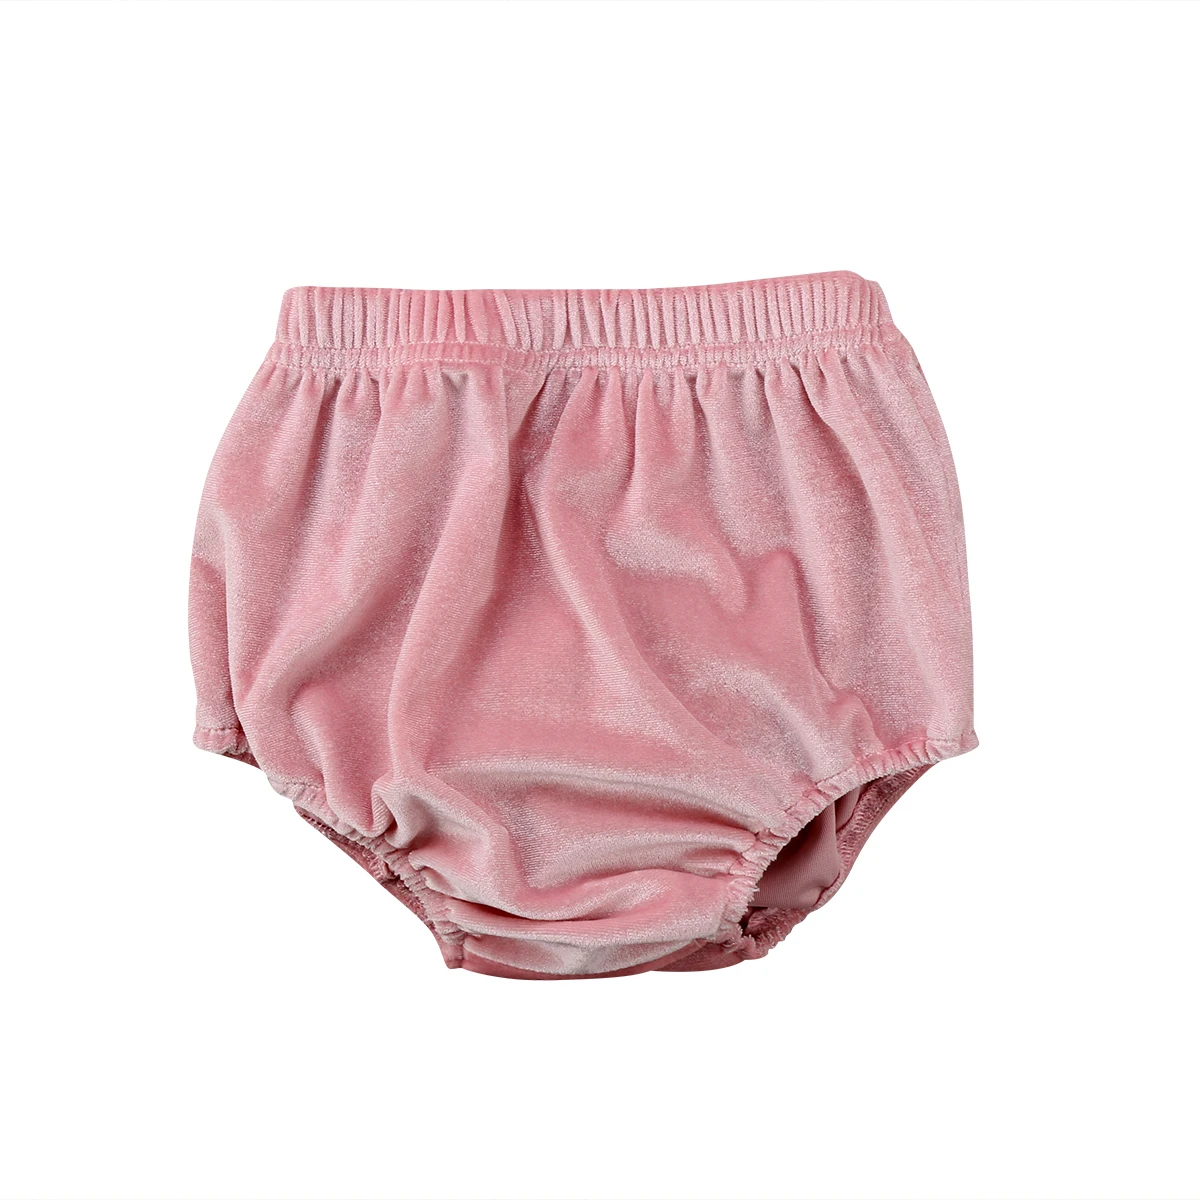 Новорожденный ребенок детская одежда для мальчиков и девочек унисекс бархат бирюзовые шорты штаны трусики горячие Одежда для маленьких мальчиков и девочек От 0 до 3 лет - Цвет: Розовый